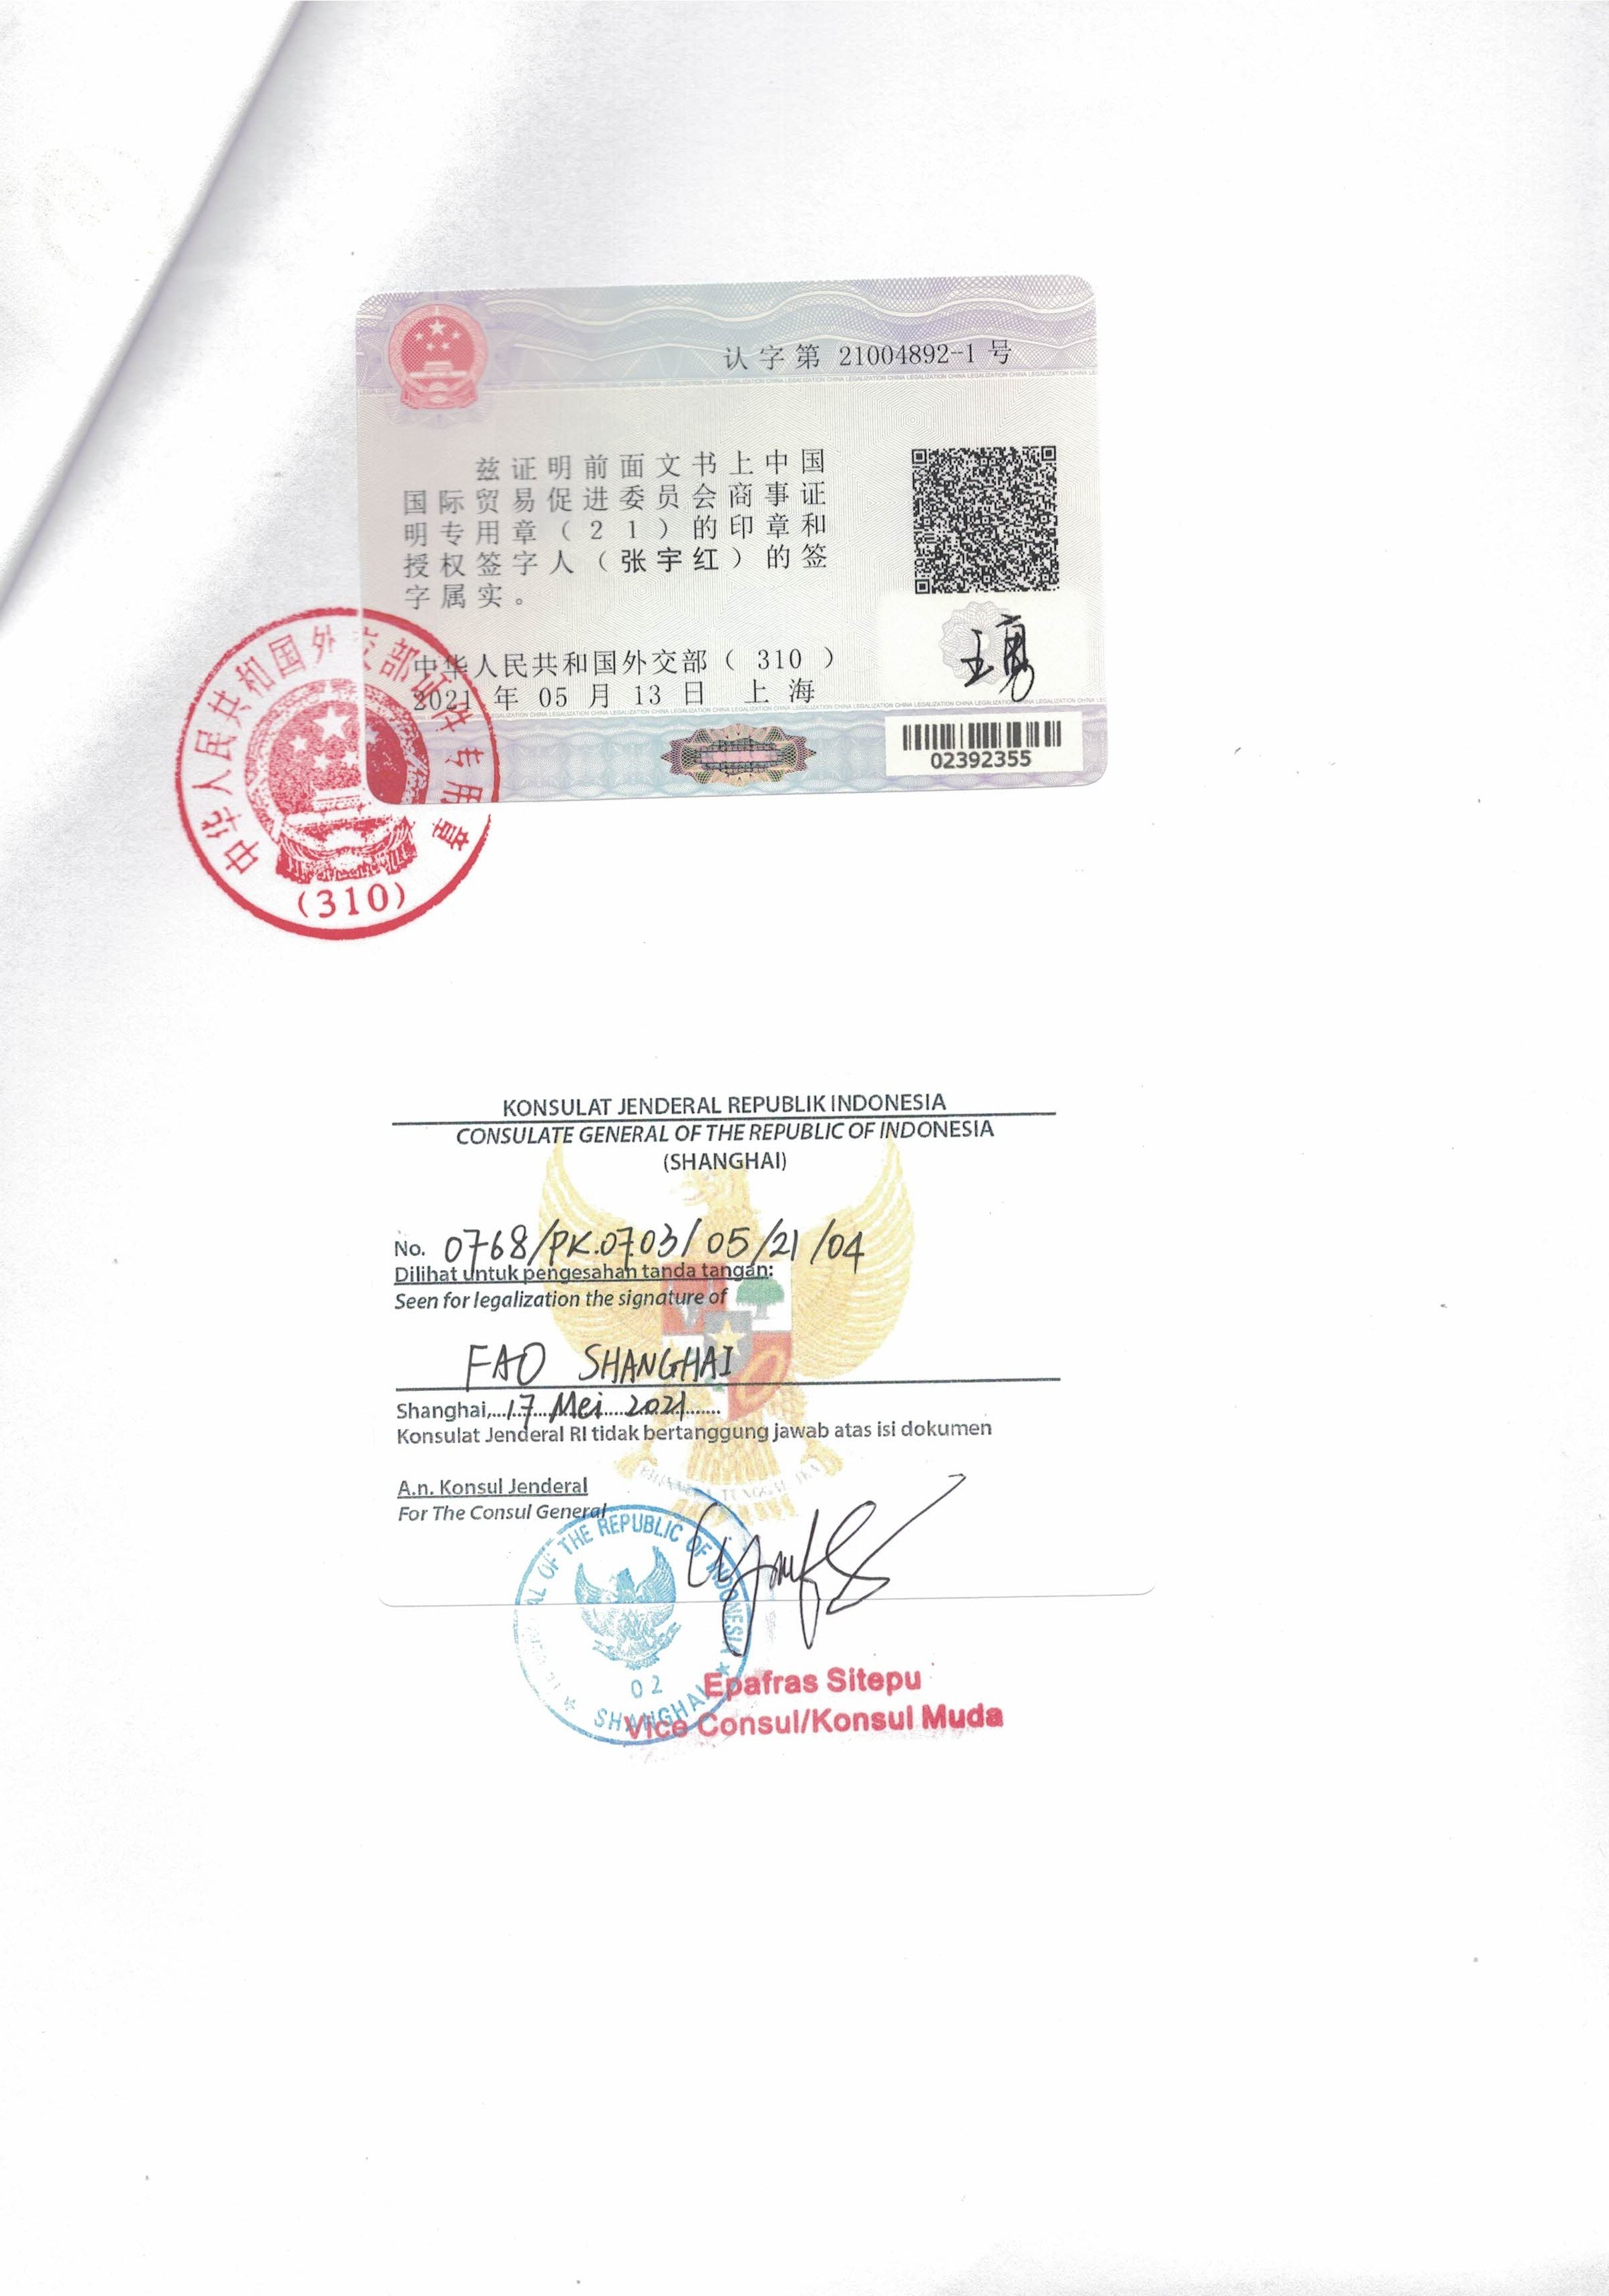 越南CFS证书越南大使馆认证